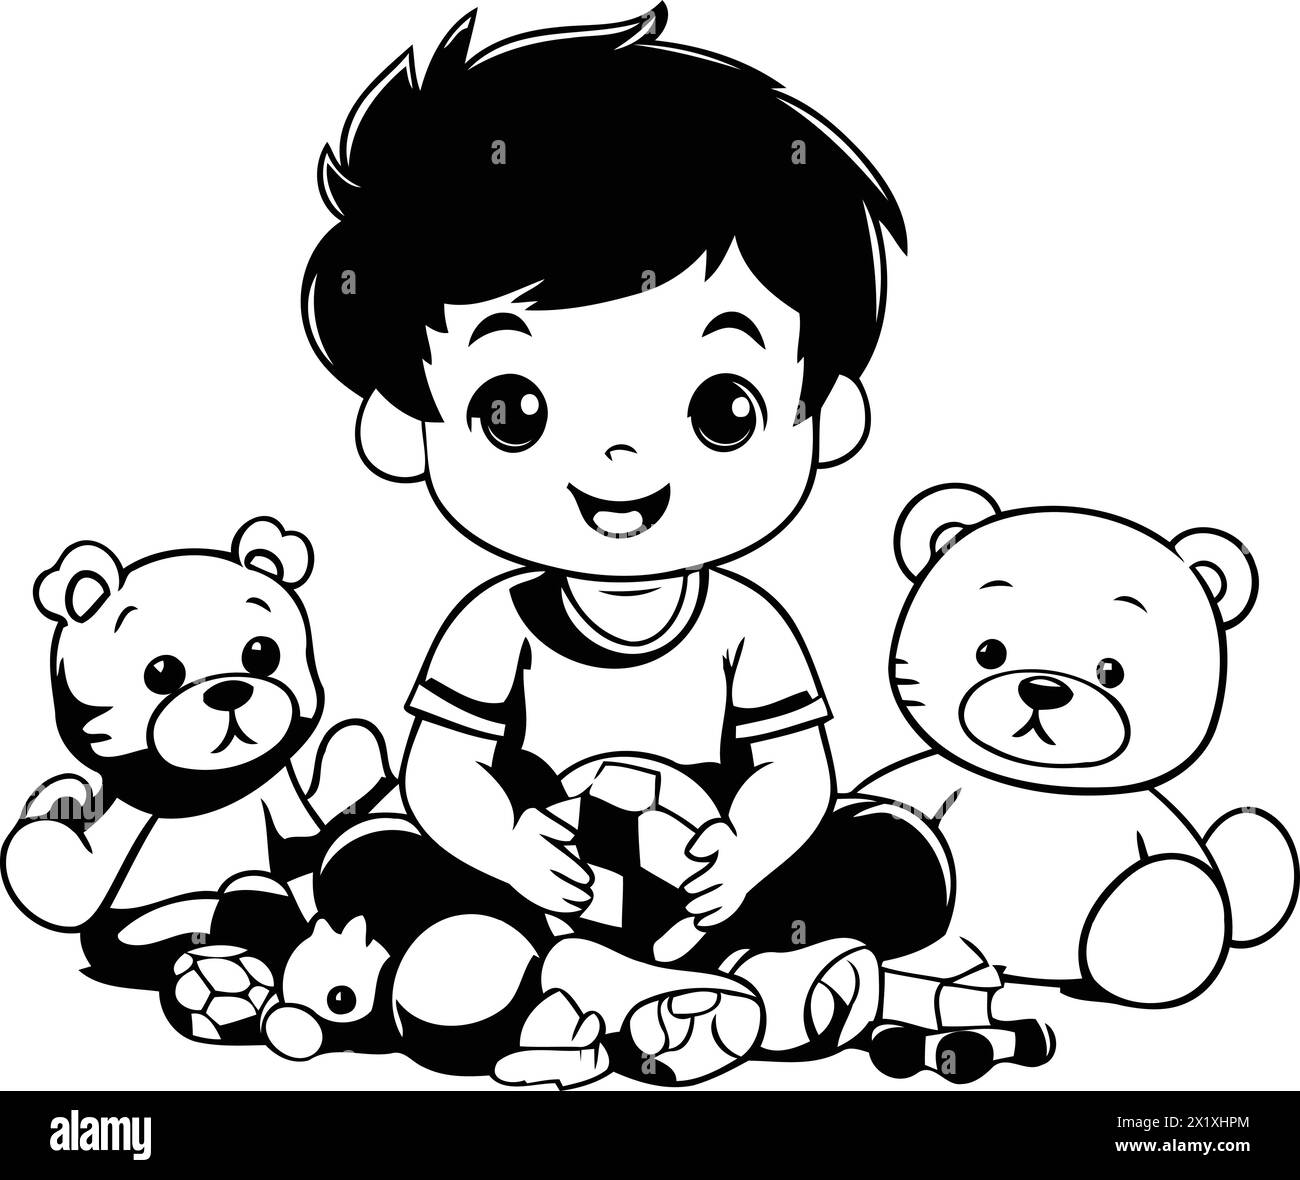 Bambino carino che gioca con orsacchiotto. Illustrazione vettoriale. Illustrazione Vettoriale